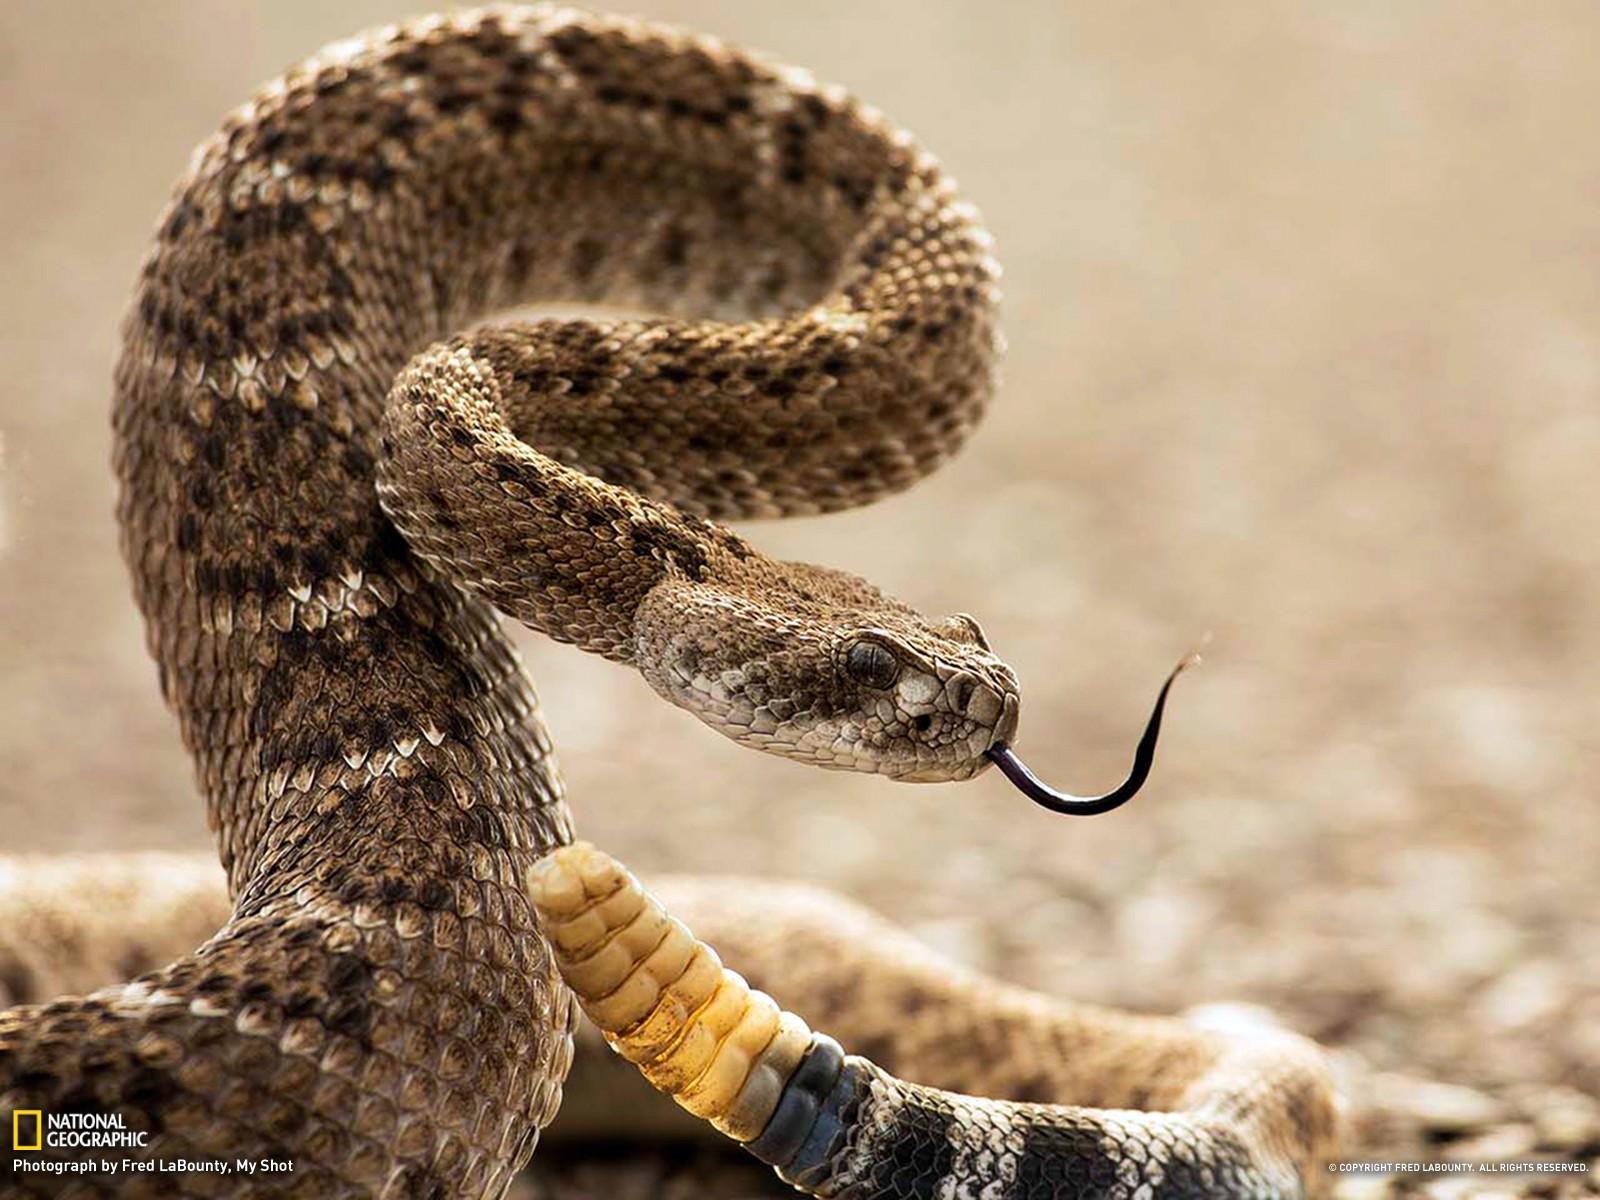 Он увидел перед собой ядовитую змею. Техасский гремучник змея. Ядовитые змеи гремучая змея. Гадюка гремучая змея. Техасский гремучник Crotalus Atrox.